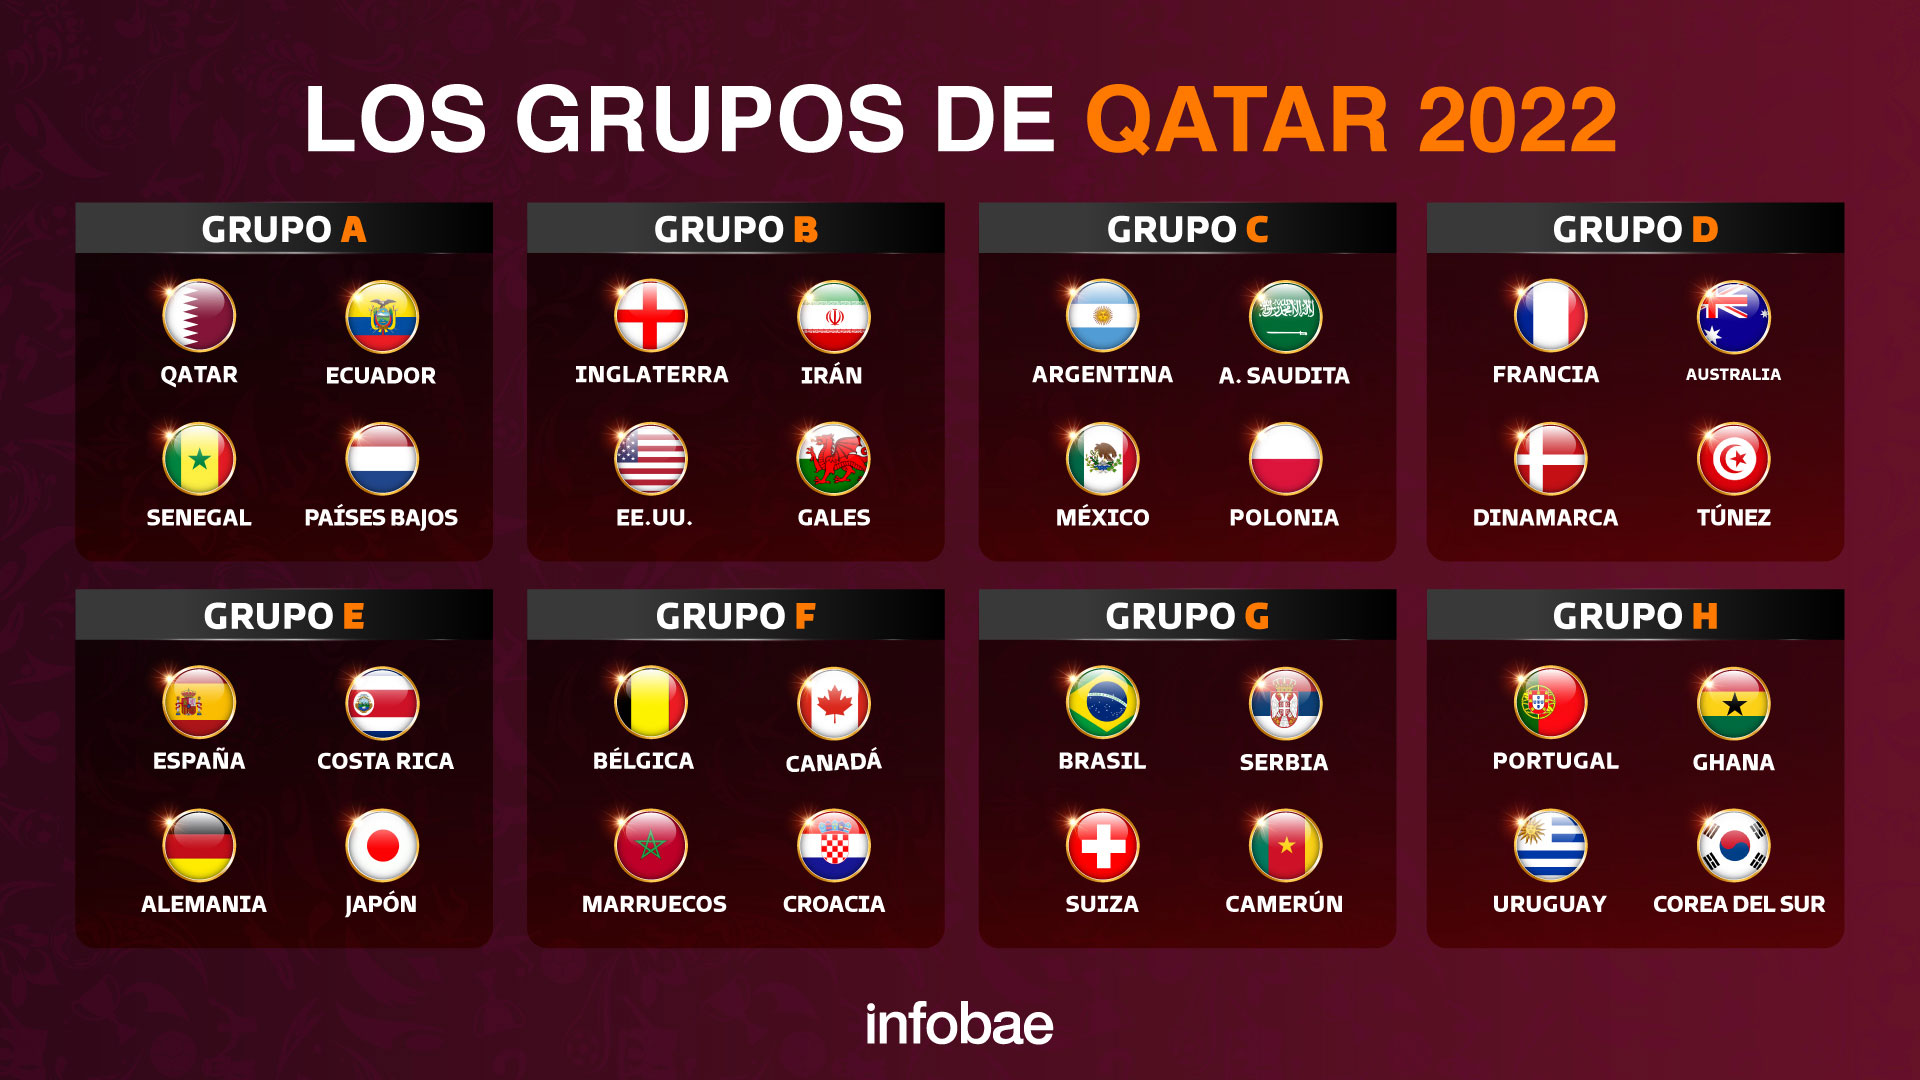 Tras la modificación del partido inaugural, así quedó el fixture del Mundial de Qatar 2022: días, horarios y estadios de todos los partidos